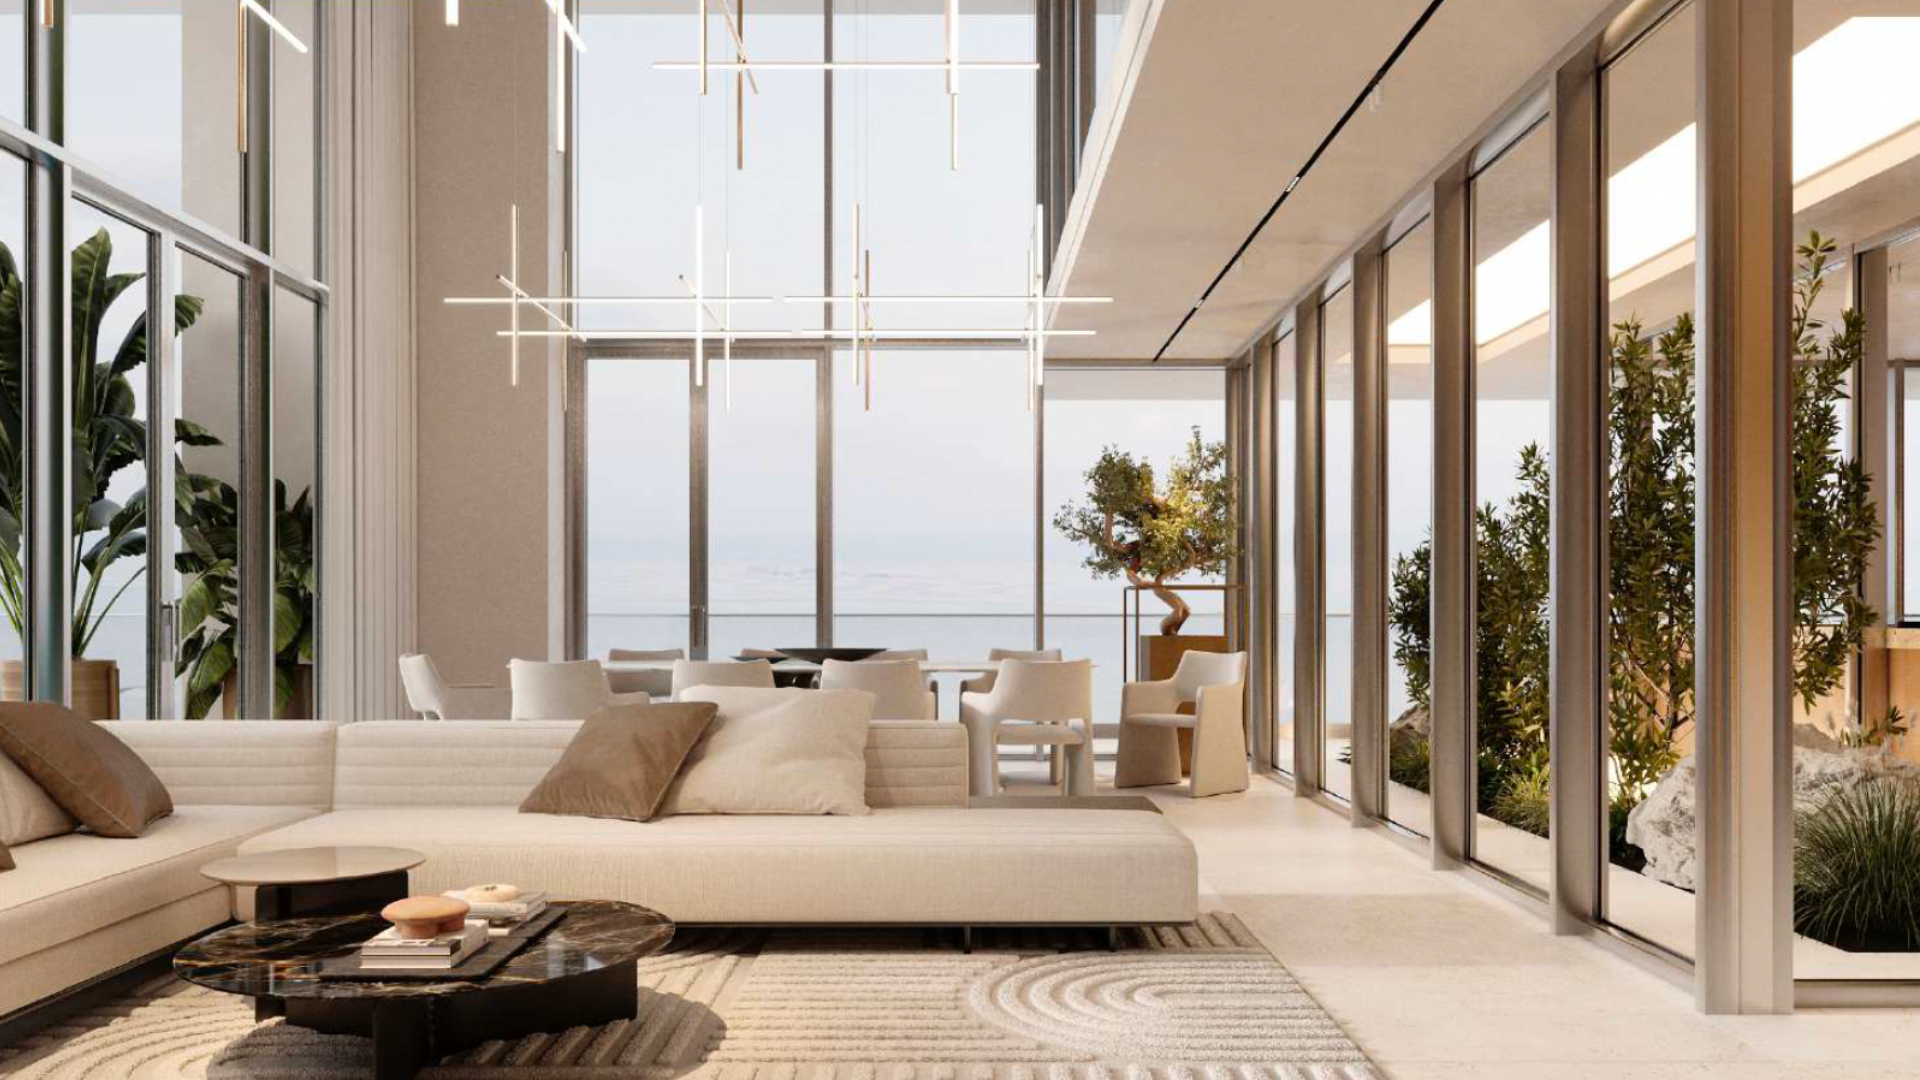 Salon moderne dans un appartement de Dubaï doté de grandes fenêtres donnant sur l'océan, doté d'un canapé sectionnel blanc, d'une décoration aux tons neutres et de suspensions contemporaines. Les plantes d'intérieur ajoutent une touche de verdure.